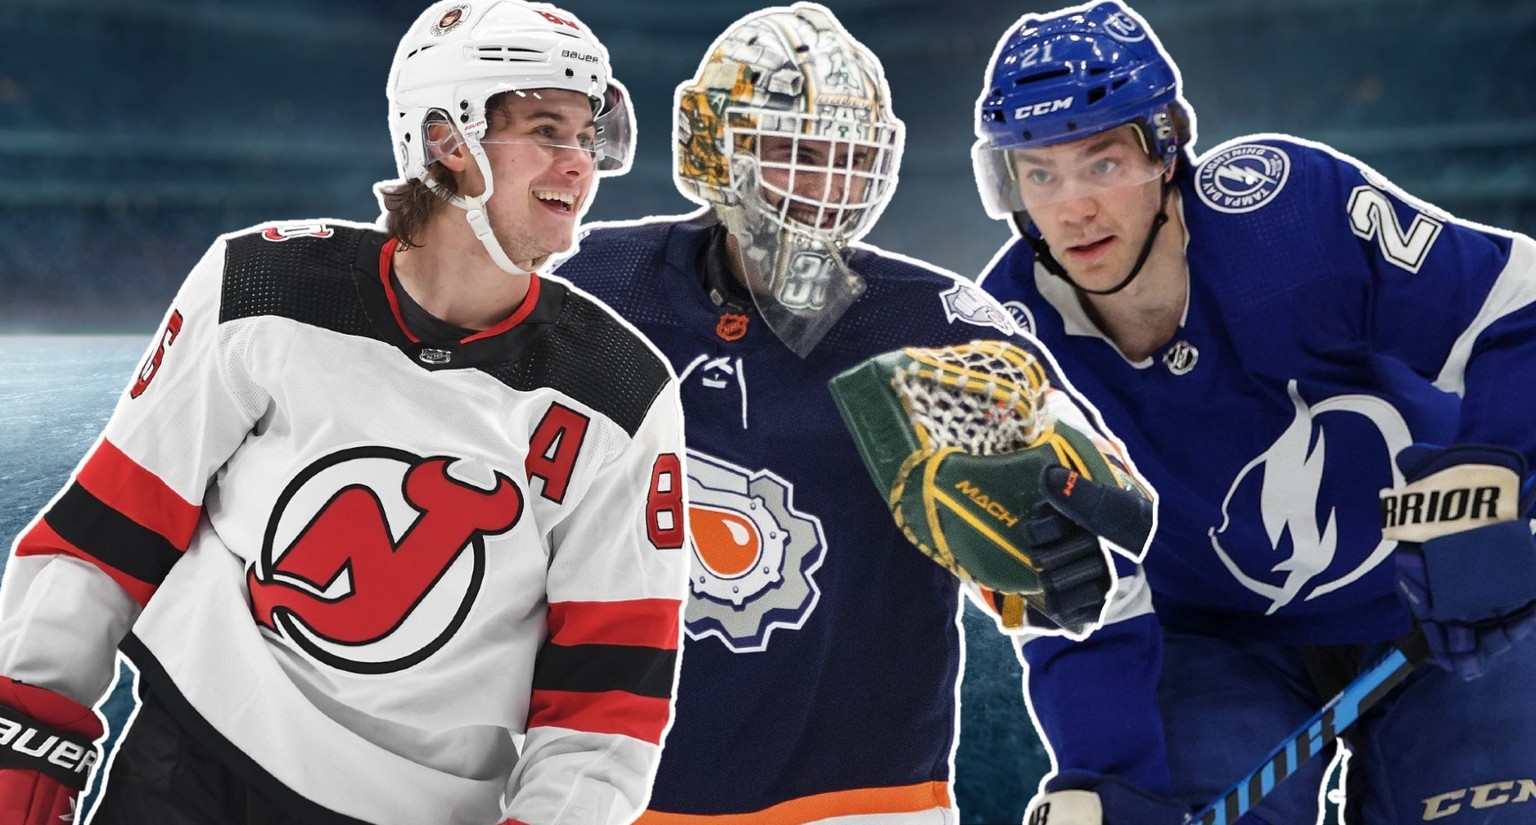 Drei der prägenden Figuren im Januar 2023 in der NHL: Jack Hughes, Matt Berlin und Brayden Point.